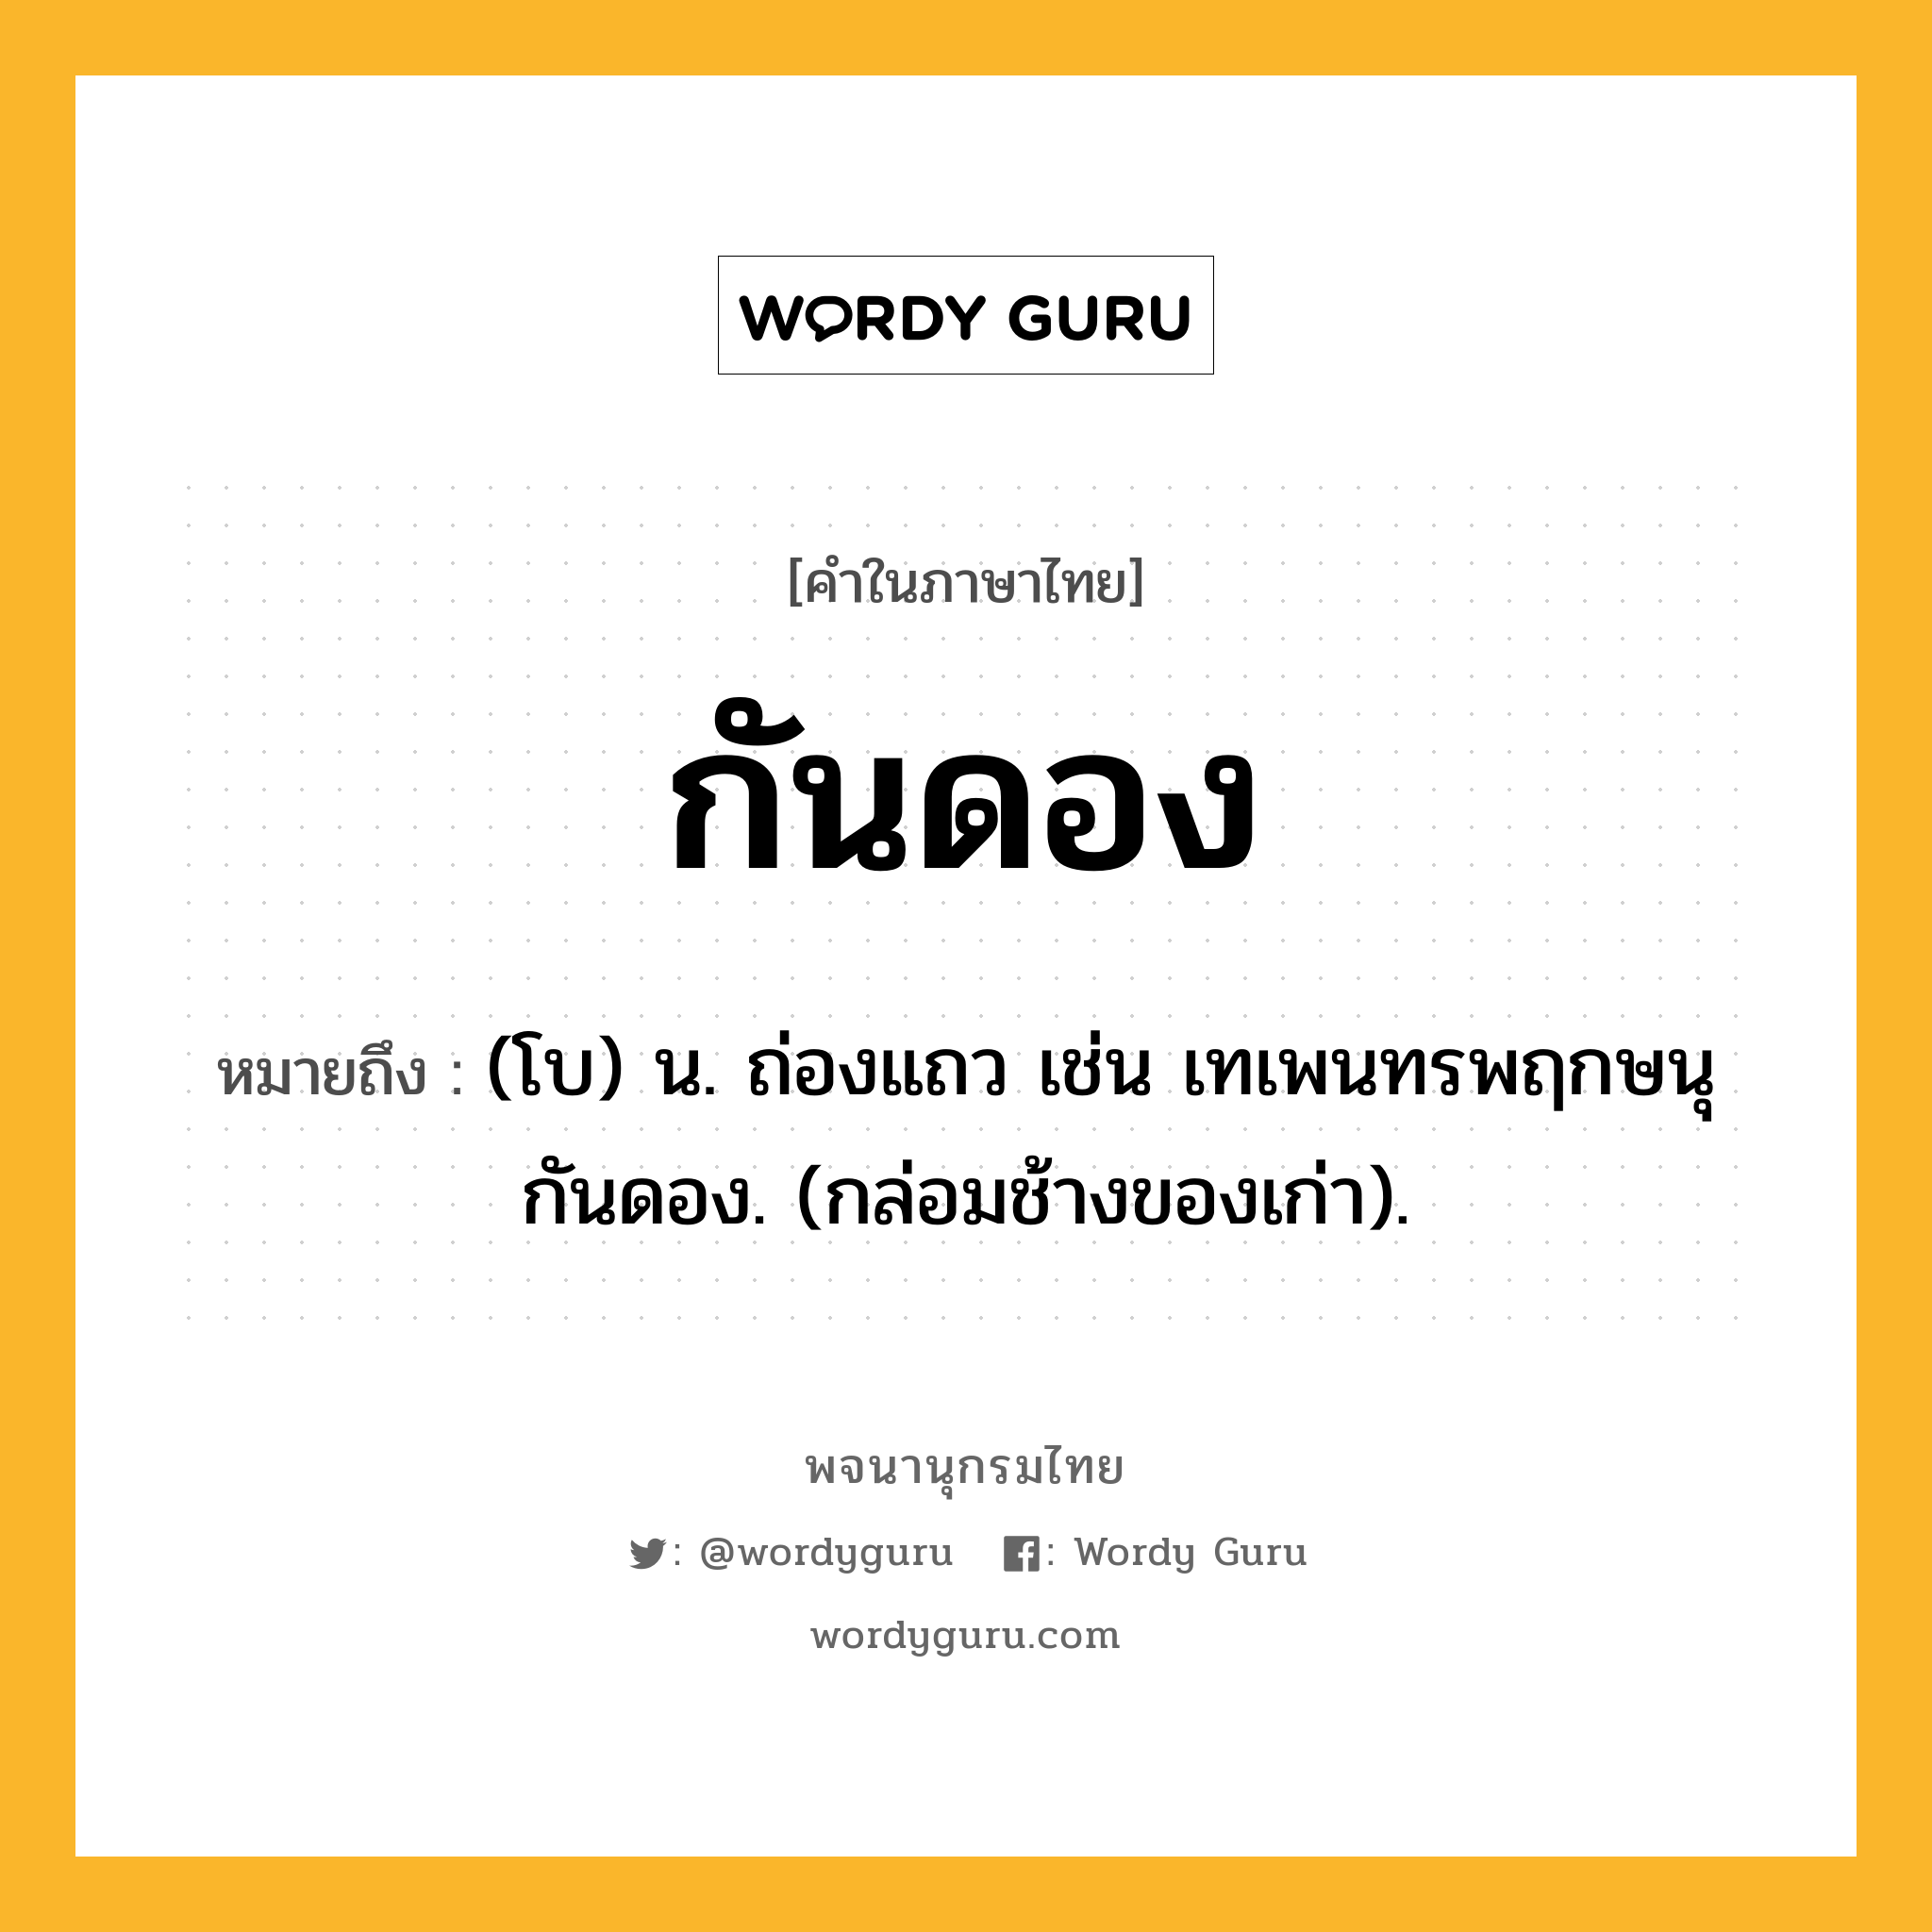 กันดอง หมายถึงอะไร?, คำในภาษาไทย กันดอง หมายถึง (โบ) น. ถ่องแถว เช่น เทเพนทรพฤกษนุกันดอง. (กล่อมช้างของเก่า).